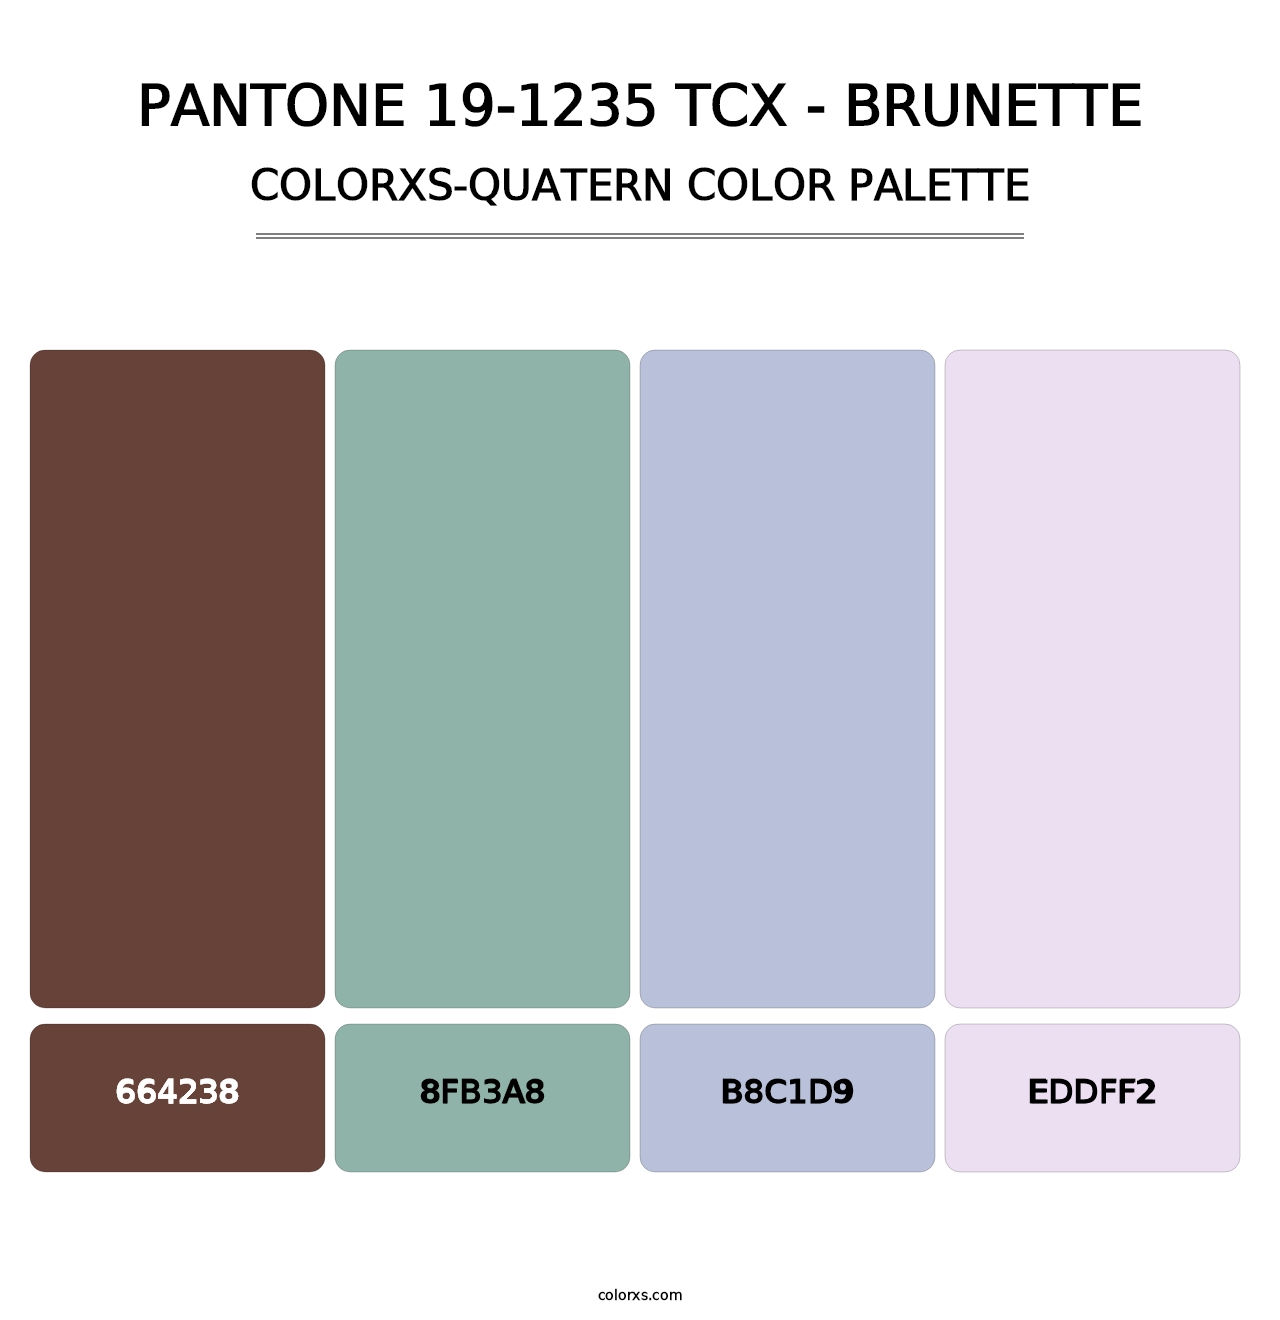 PANTONE 19-1235 TCX - Brunette - Colorxs Quatern Palette